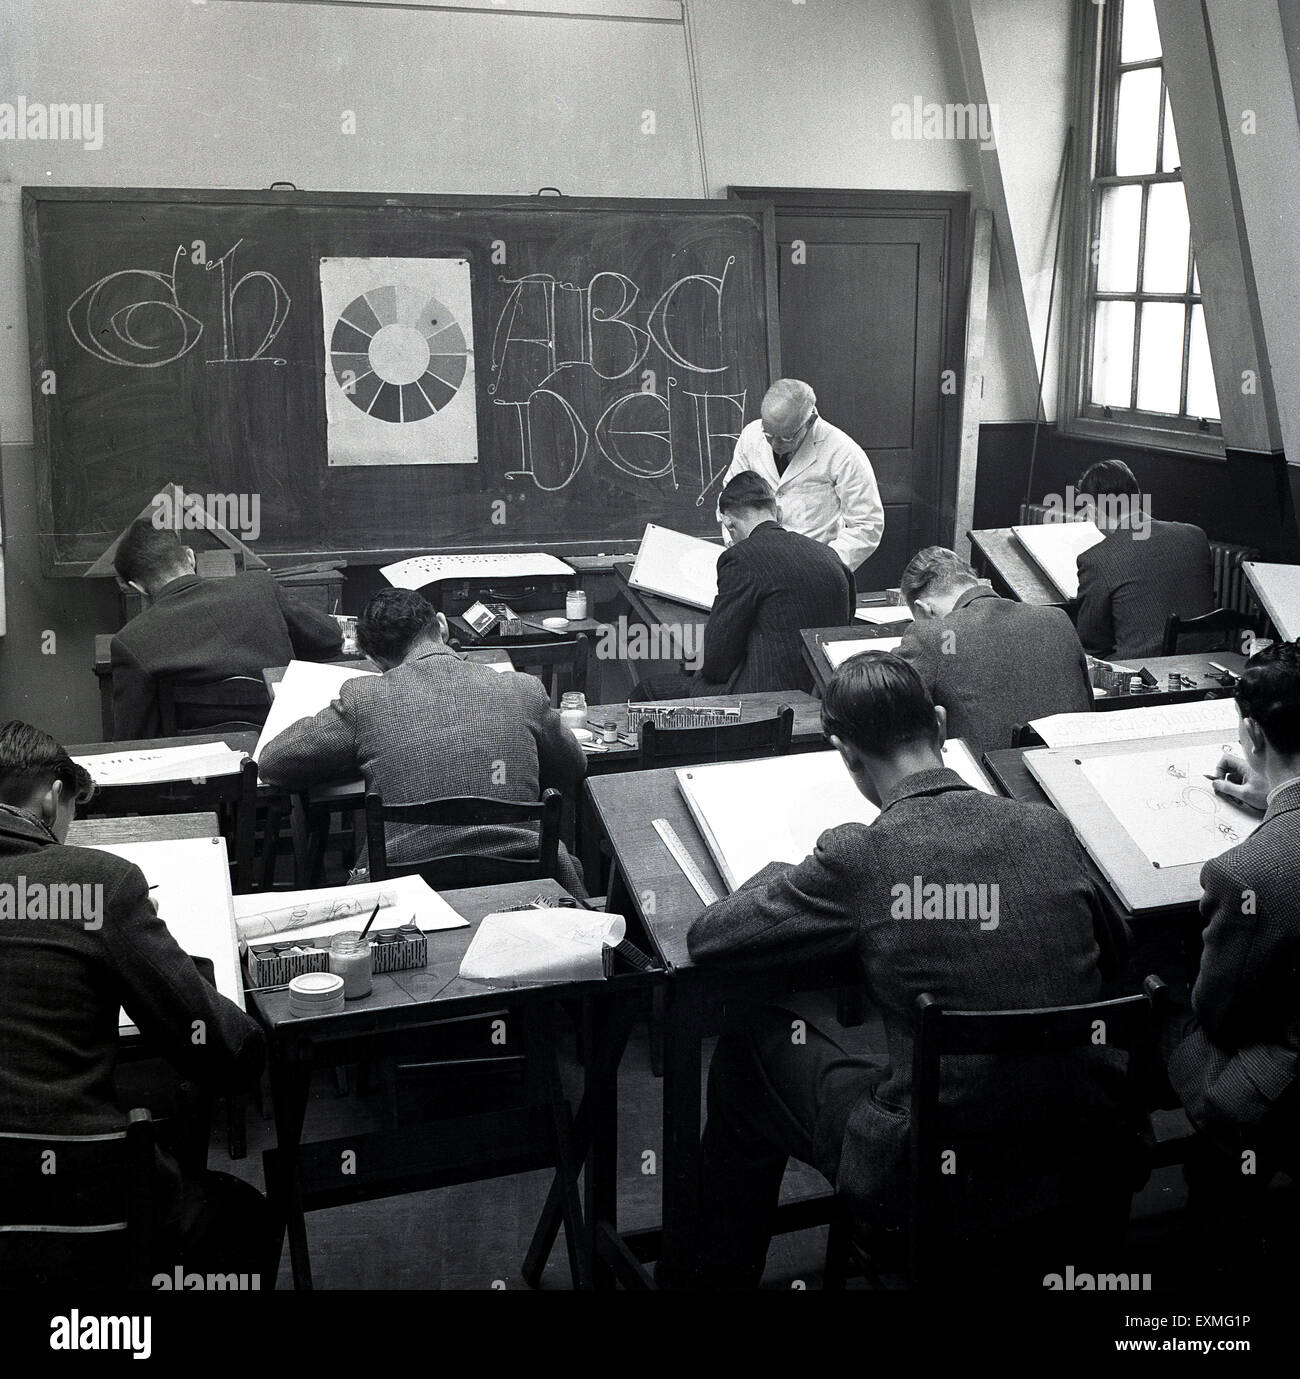 1950er Jahre, historisches Bild zeigt eine Gruppe von männlichen Studenten sitzen an traditionellen einzelnen hölzernen Schreibtischen in einem Klassenzimmer unterrichtet Grafikdesign von einem weißen überzogenen männlichen Lehrer, der einem Schüler an der Tafel hilft. Stockfoto